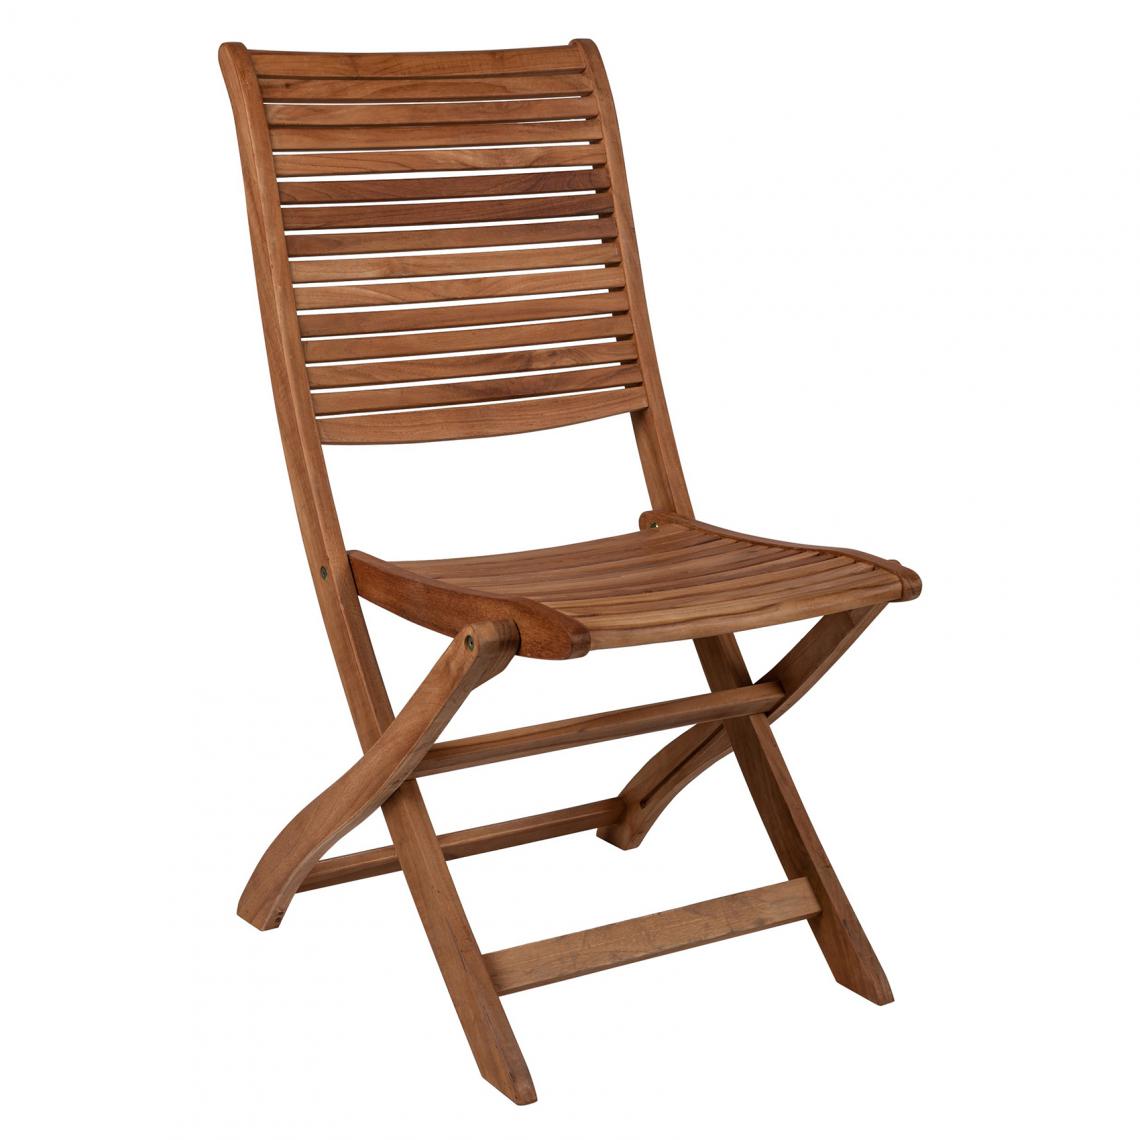 Alter - Chaise pliante en bois de teck, coloris marron, 49 x 65 x h45 cm - Chaises